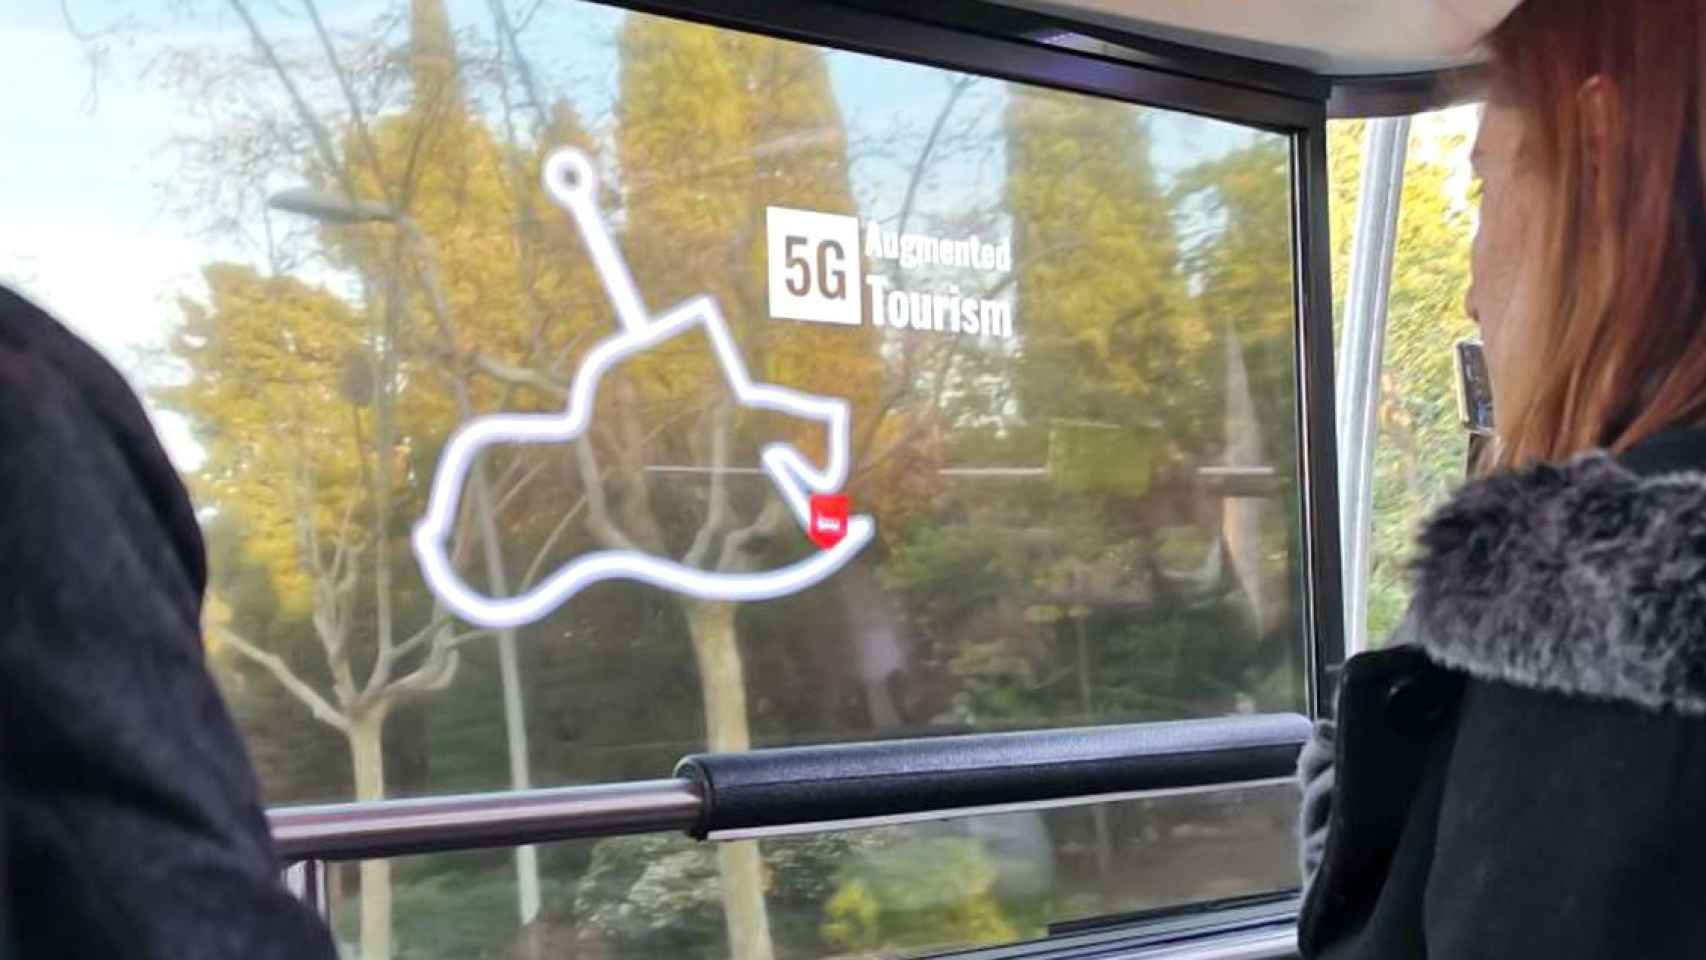 La tecnología 5G aplicada a los buses turísticos de Barcelona